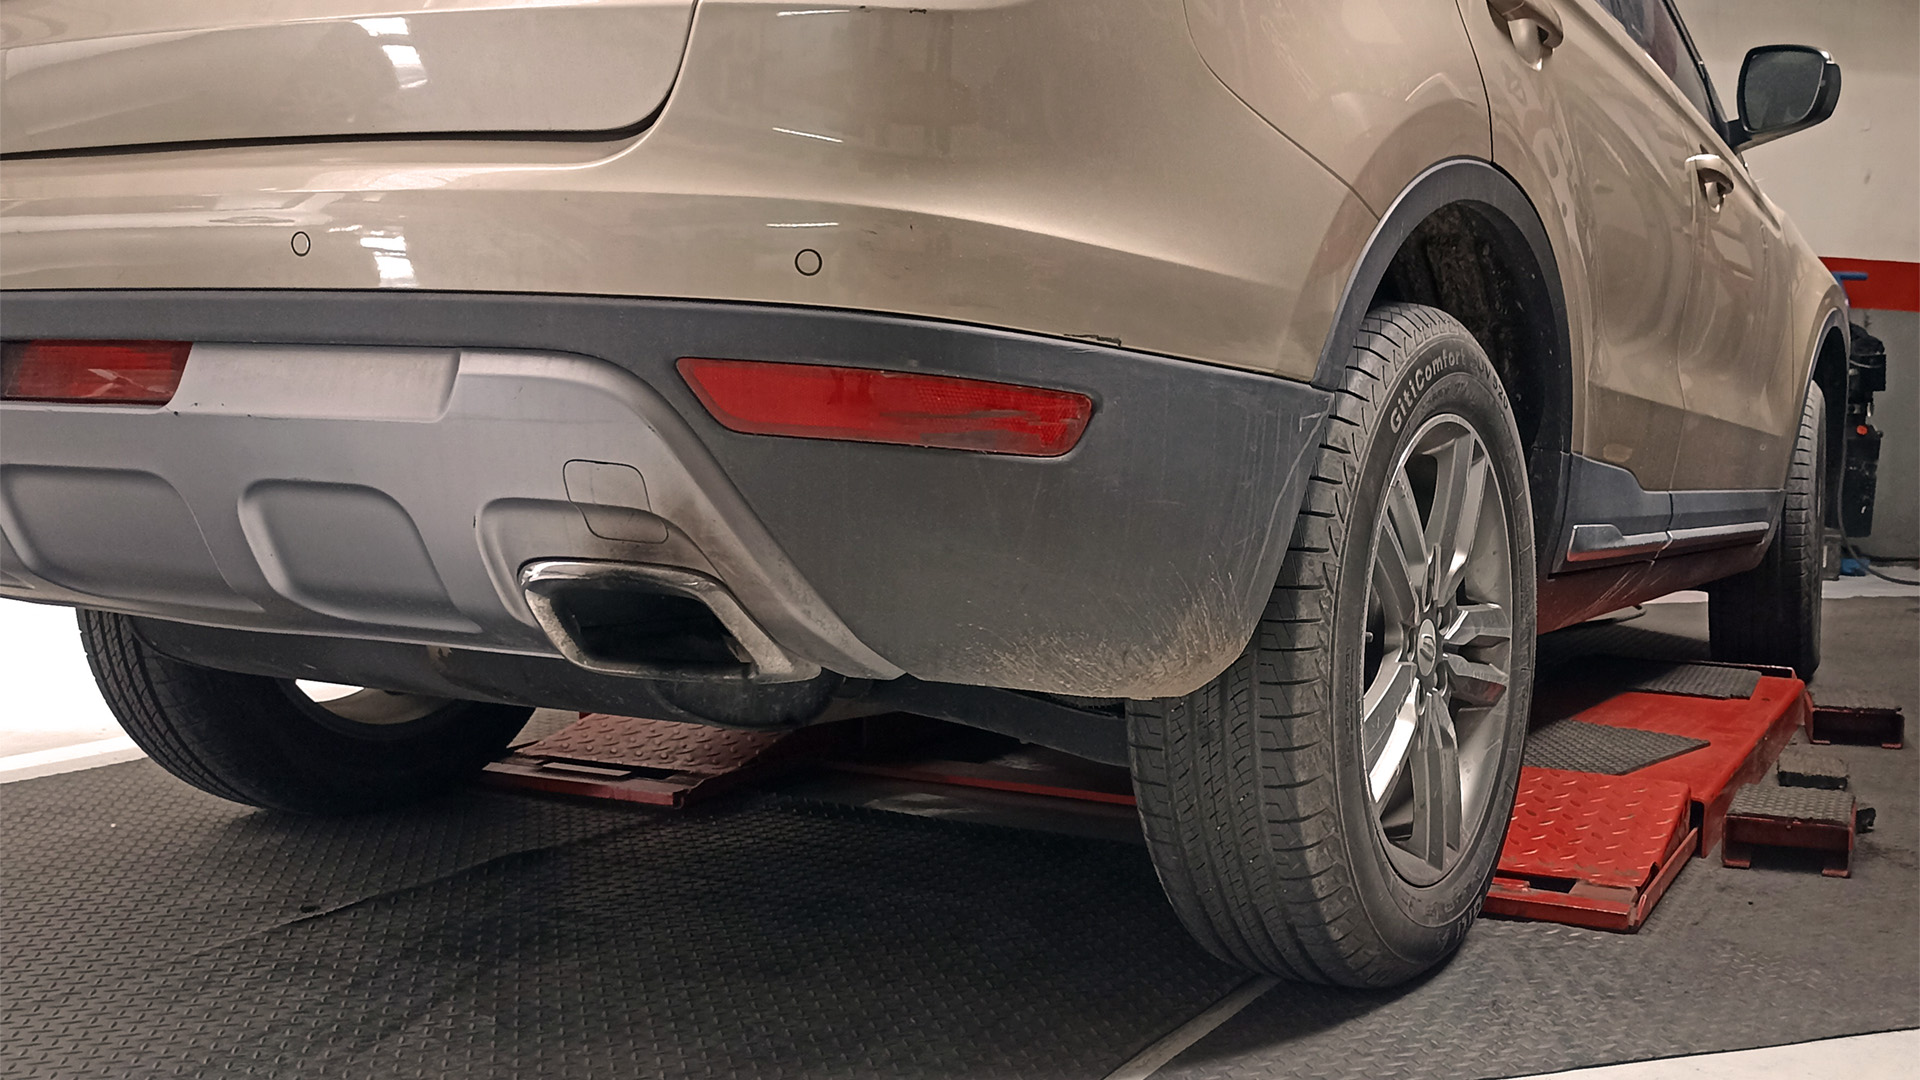 La verificación del buen estado de los neumáticos y de las partes de suspensión y dirección con los que actúan es fundamental para un viaje seguro y sin sobresaltos